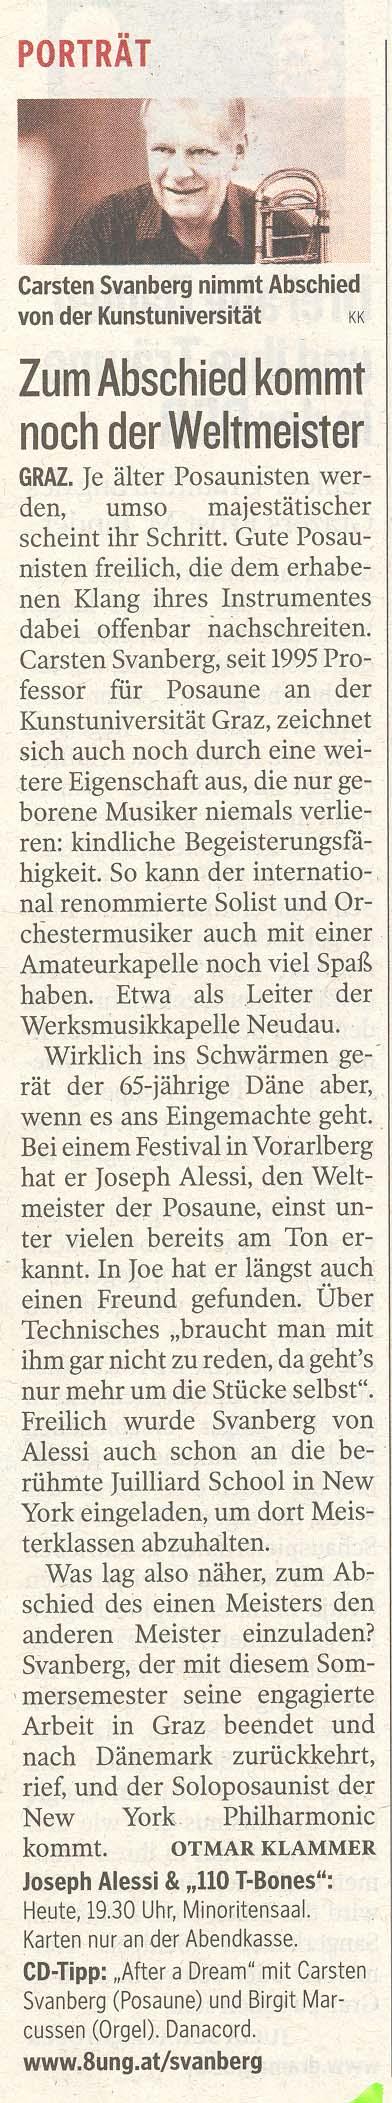 Kleine Zeitung, Kultur, 26.